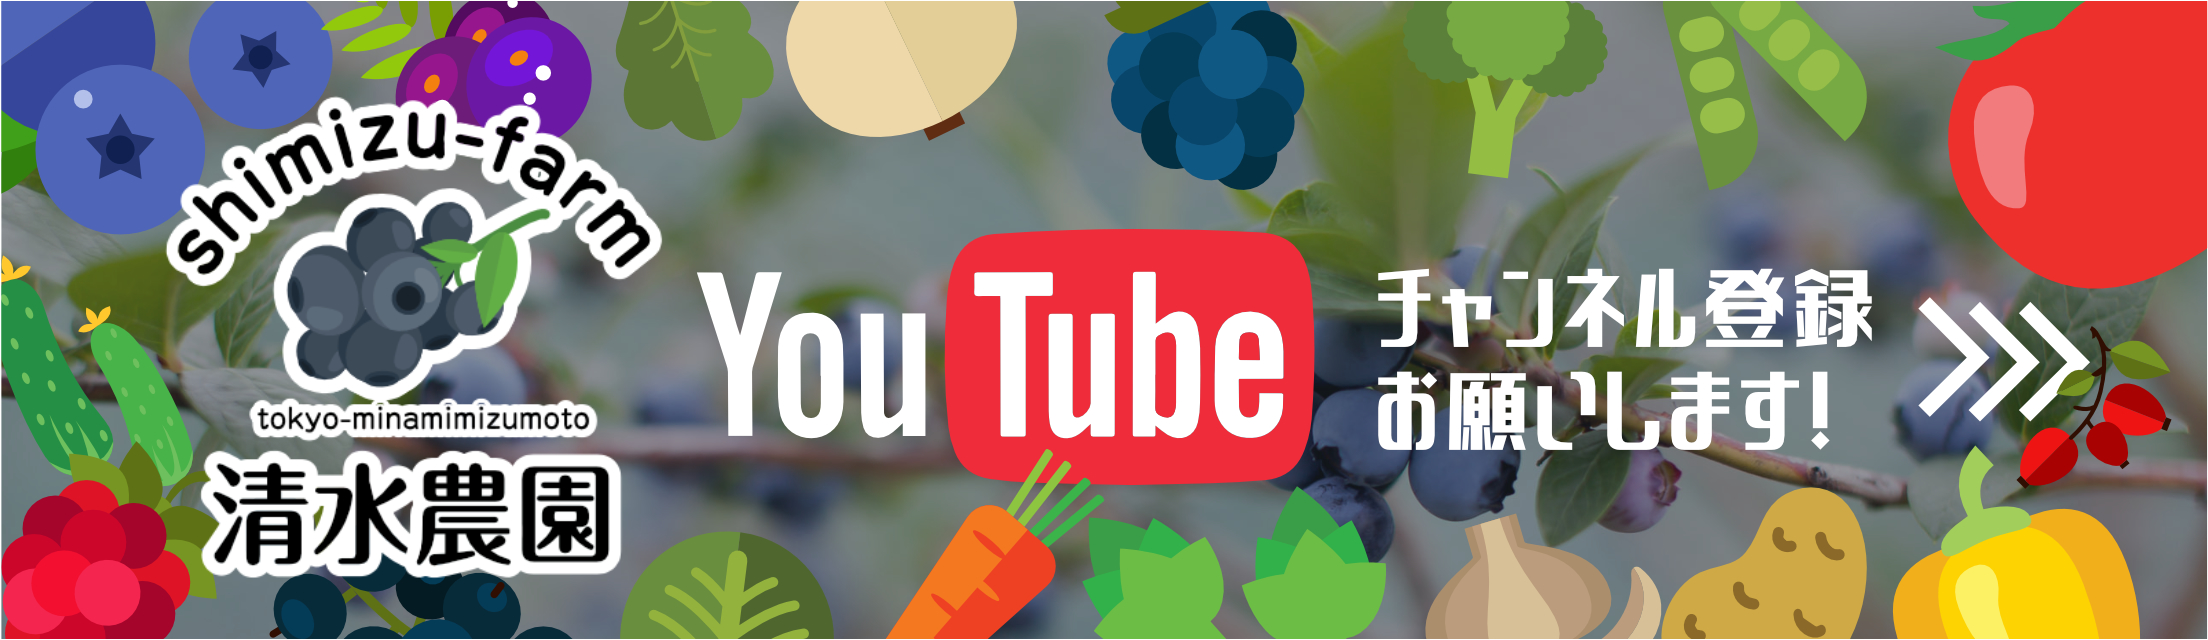 清水農園YouTube